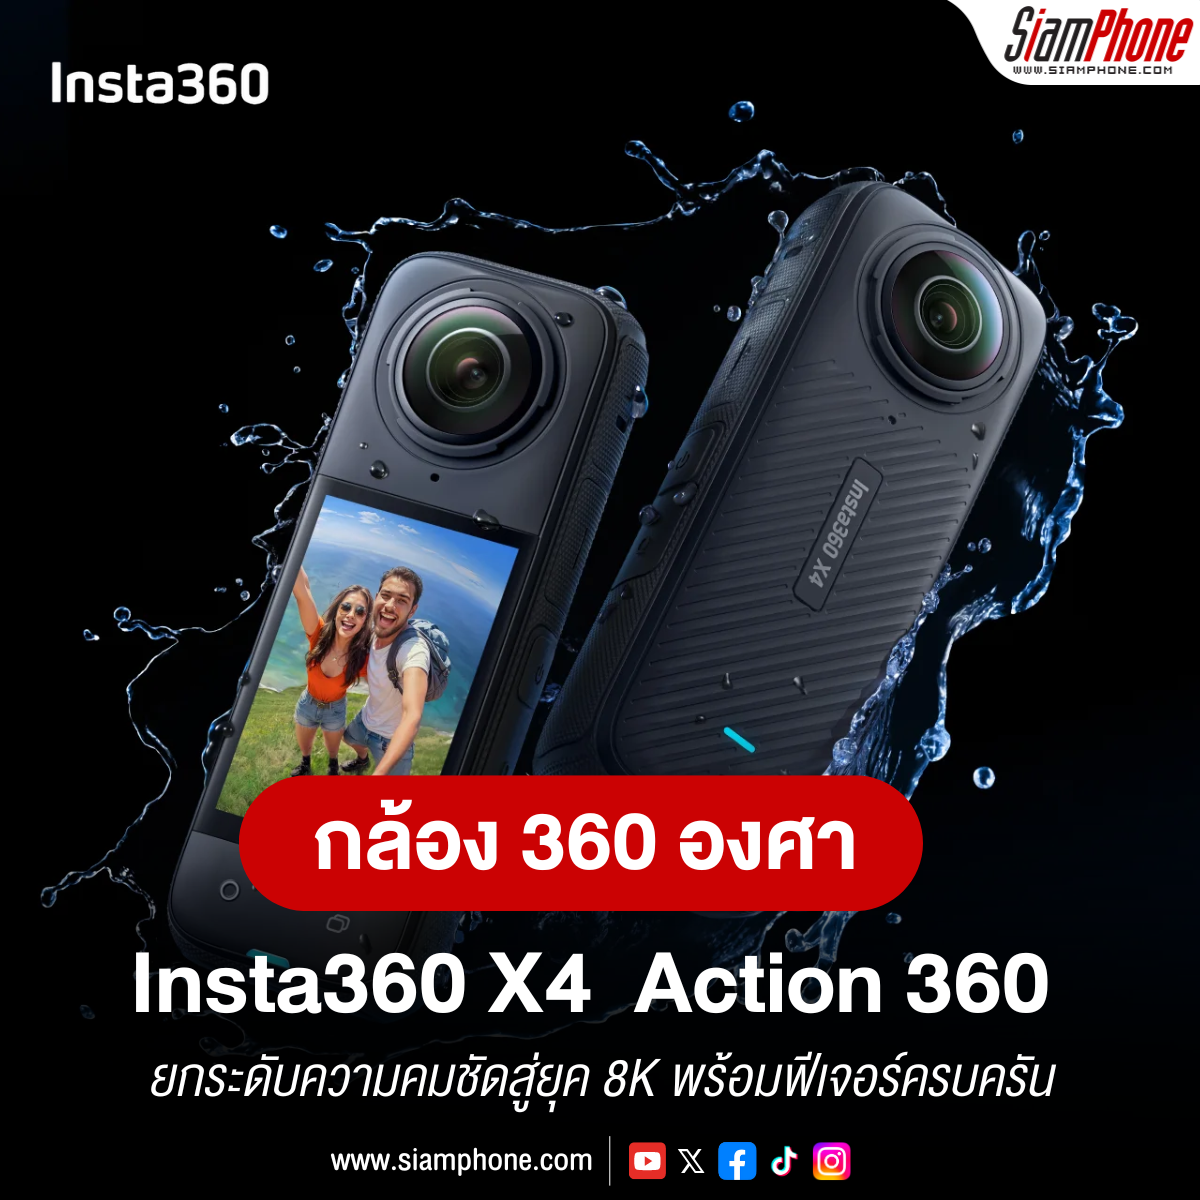  Insta360 X4 กล้อง Action 360 องศารุ่นเรือธง ยกระดับความคมชัดสู่ยุค 8K พร้อมฟีเจอร์ครบครัน